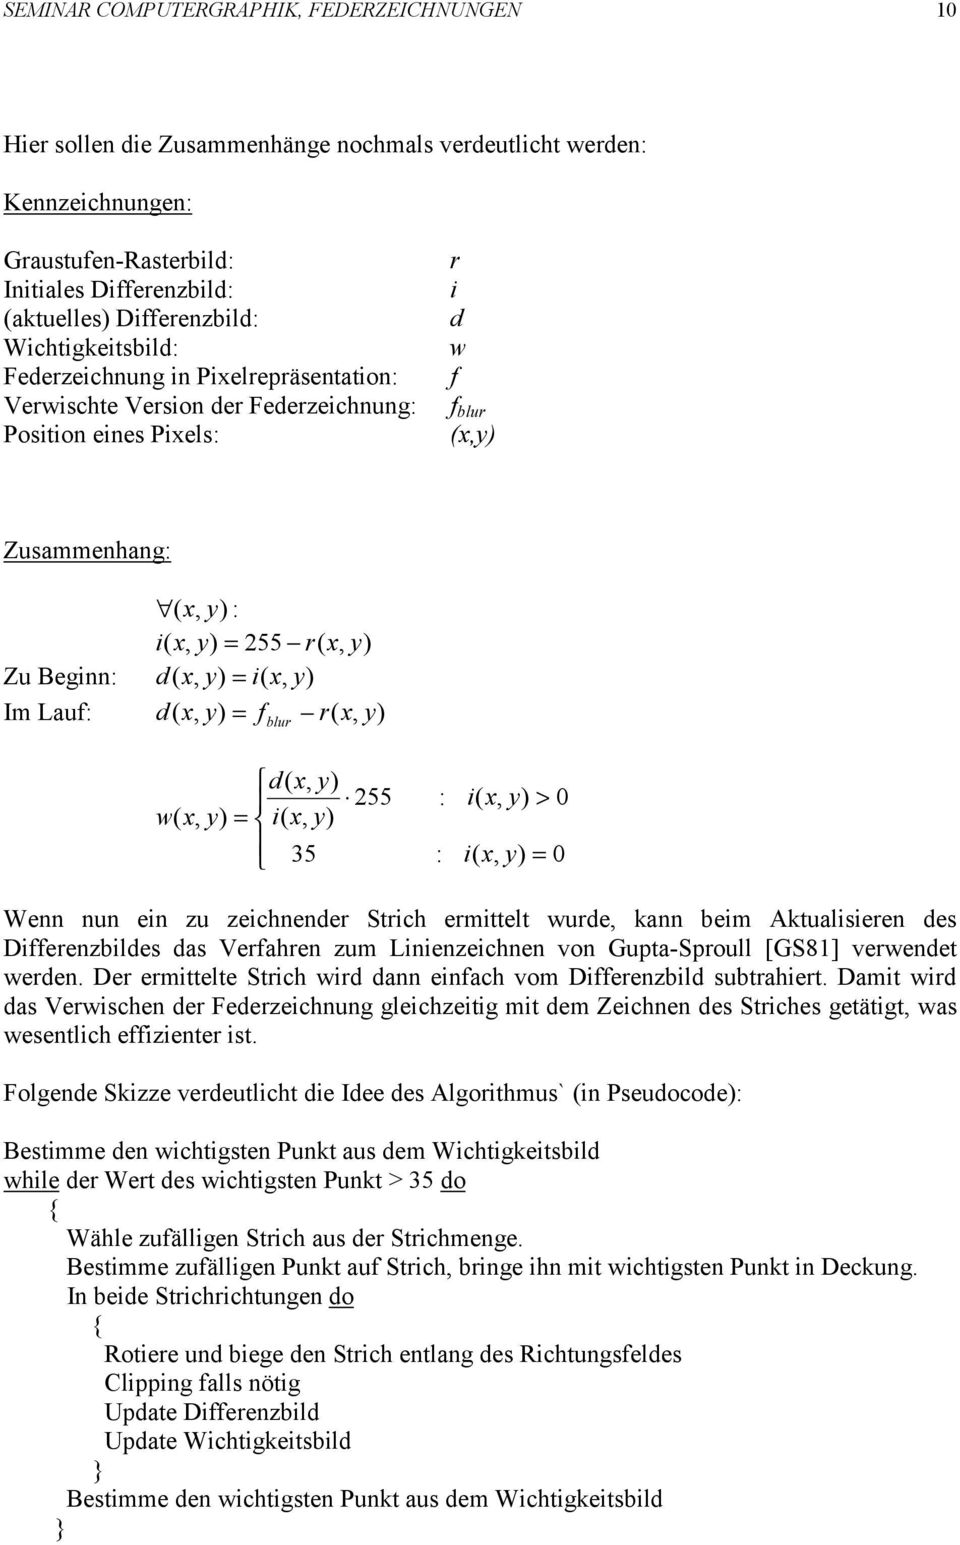 x, = blur d( x, ( x, 35 255 : : ( x, > 0 ( x, = 0 Wenn nun en zu zechnender Strch ermttelt wurde, kann bem Aktualseren des Dfferenzbldes das Verfahren zum Lnenzechnen von Gupta-Sproull [GS81]